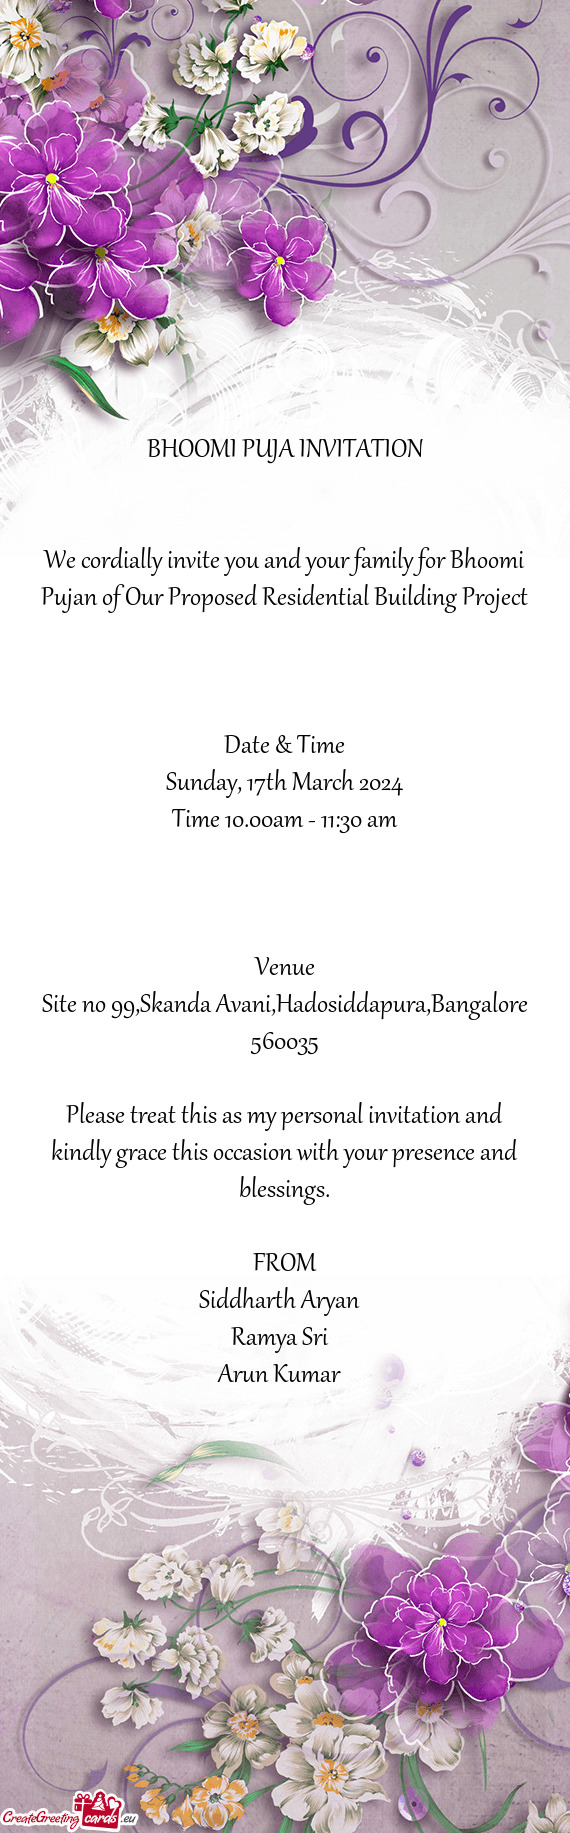 Site no 99,Skanda Avani,Hadosiddapura,Bangalore 560035